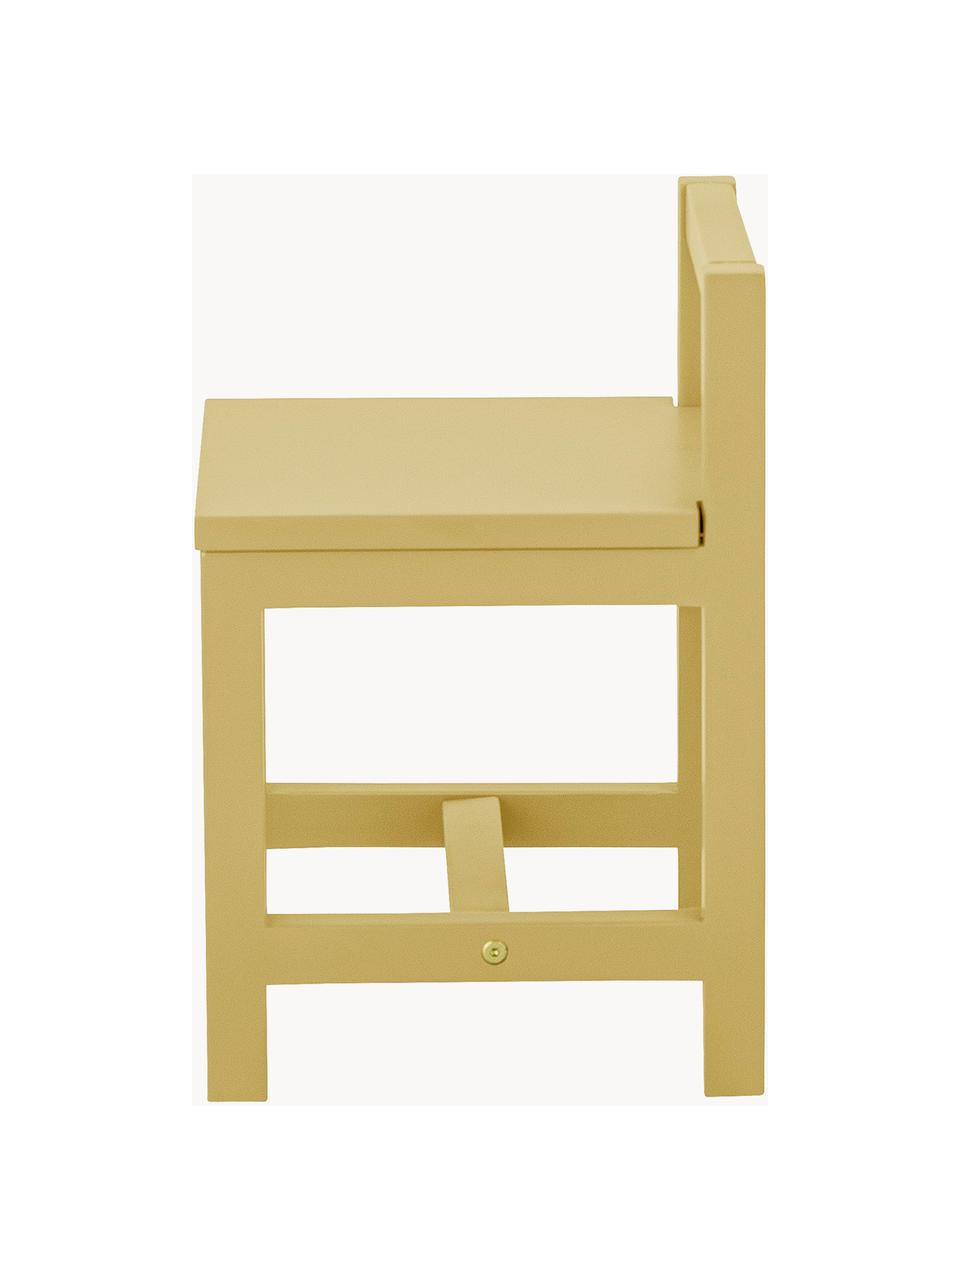 Dětská židle Rese, Dřevovláknitá deska střední hustoty (MDF), kaučukové dřevo, Kaučukové dřevo, lakované okrovou barvou, Š 32 cm, H 28 cm